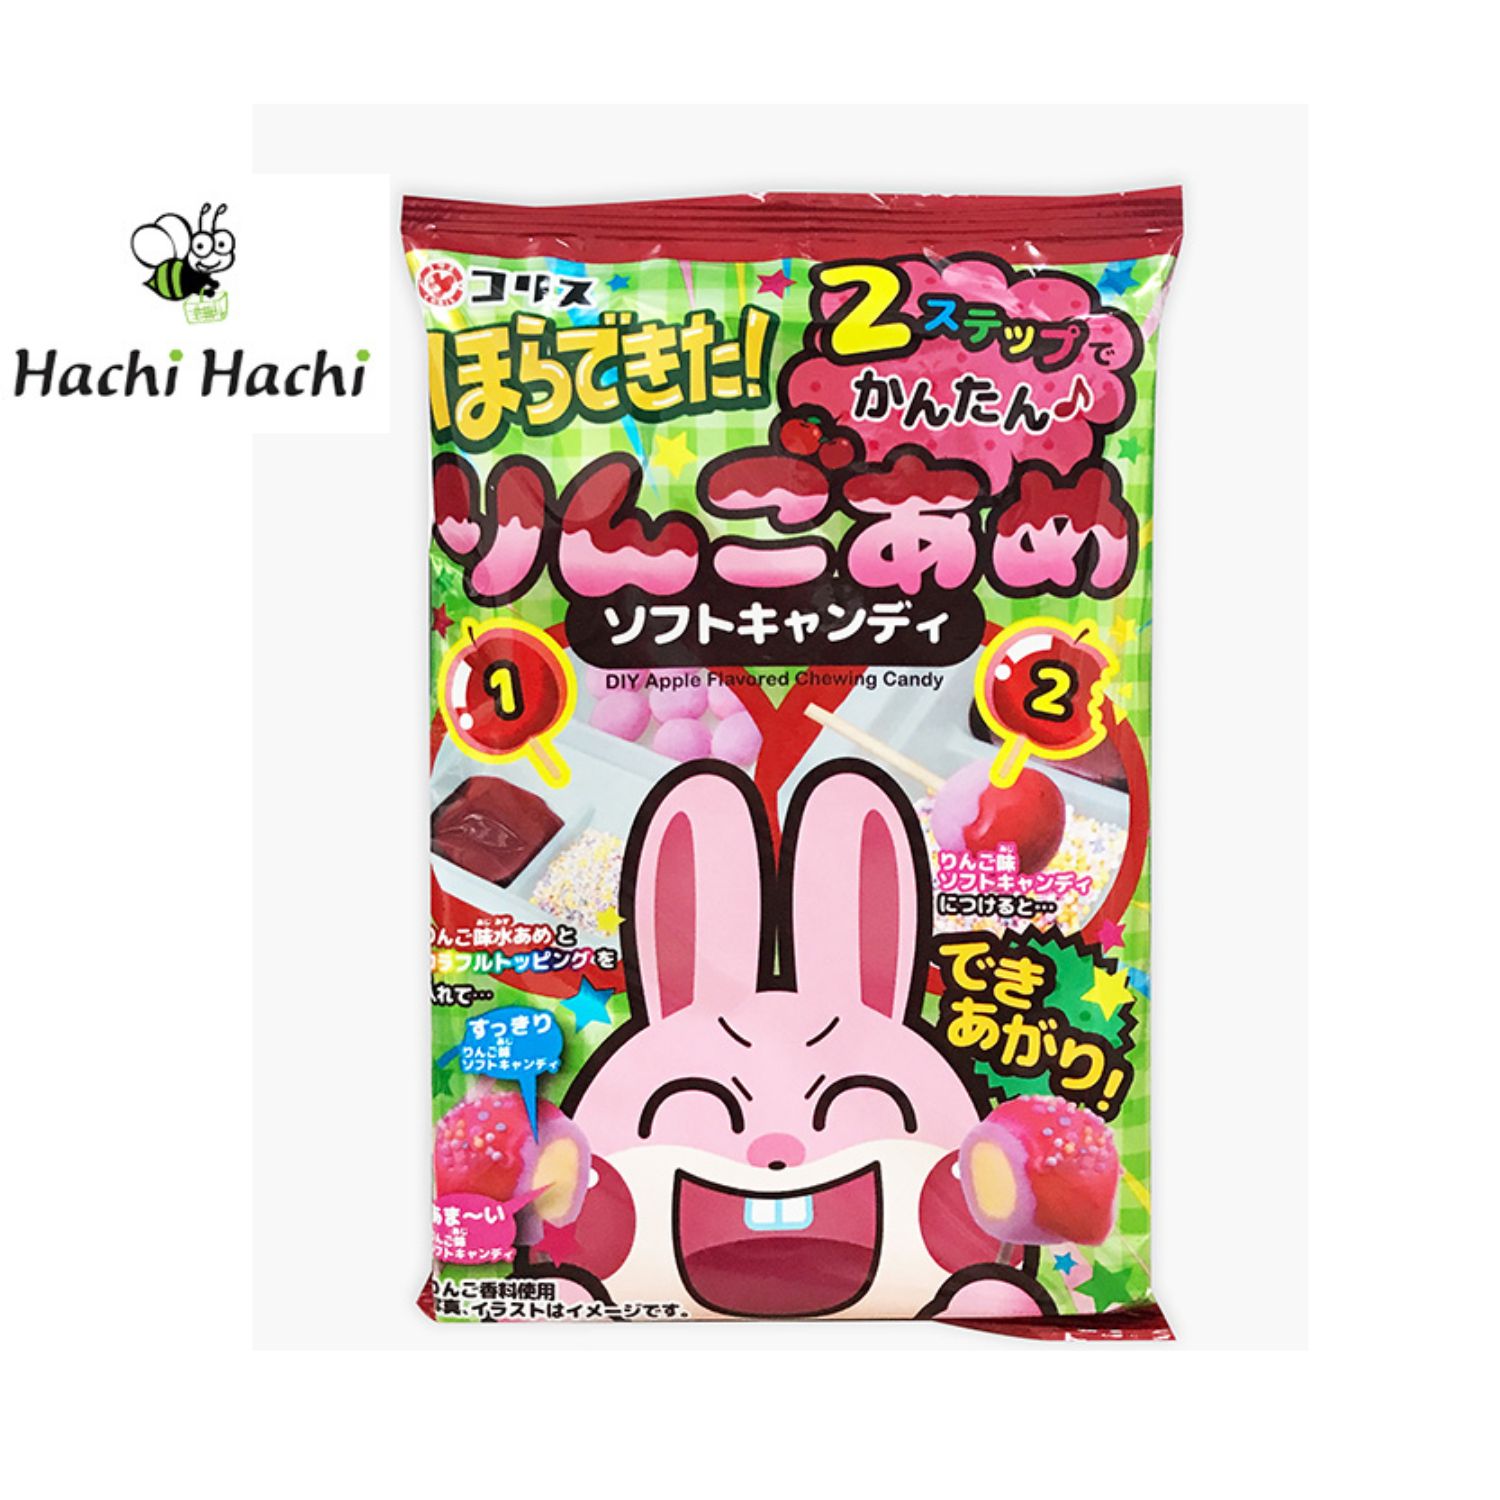 Kẹo mềm sốt siro Coris 37g - Hachi Hachi Japan Shop